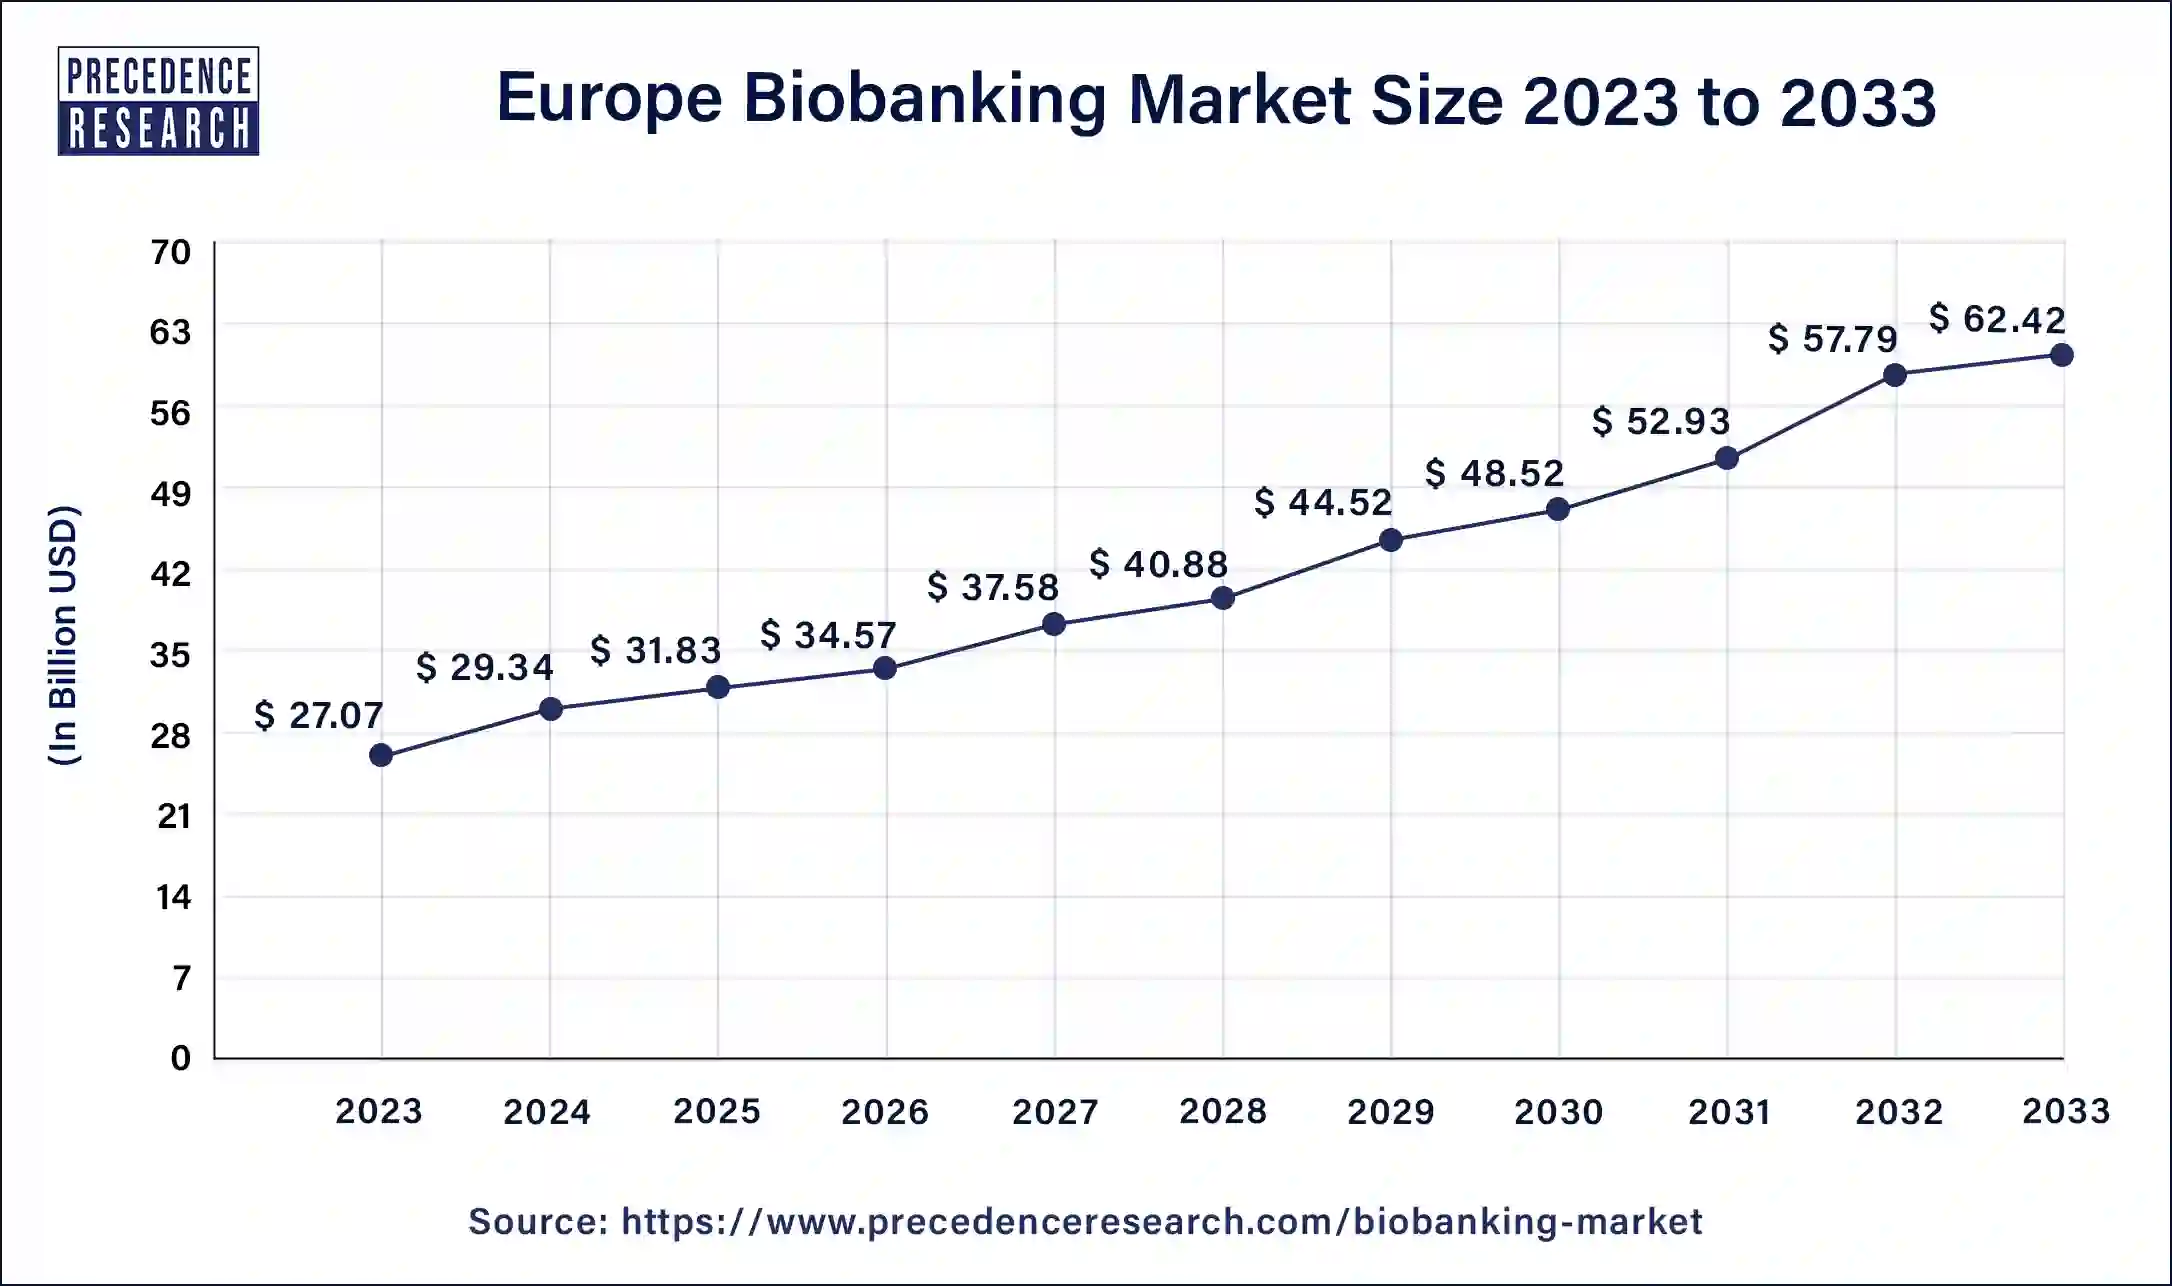 Europe Biobanking Market Size 2024 to 2033